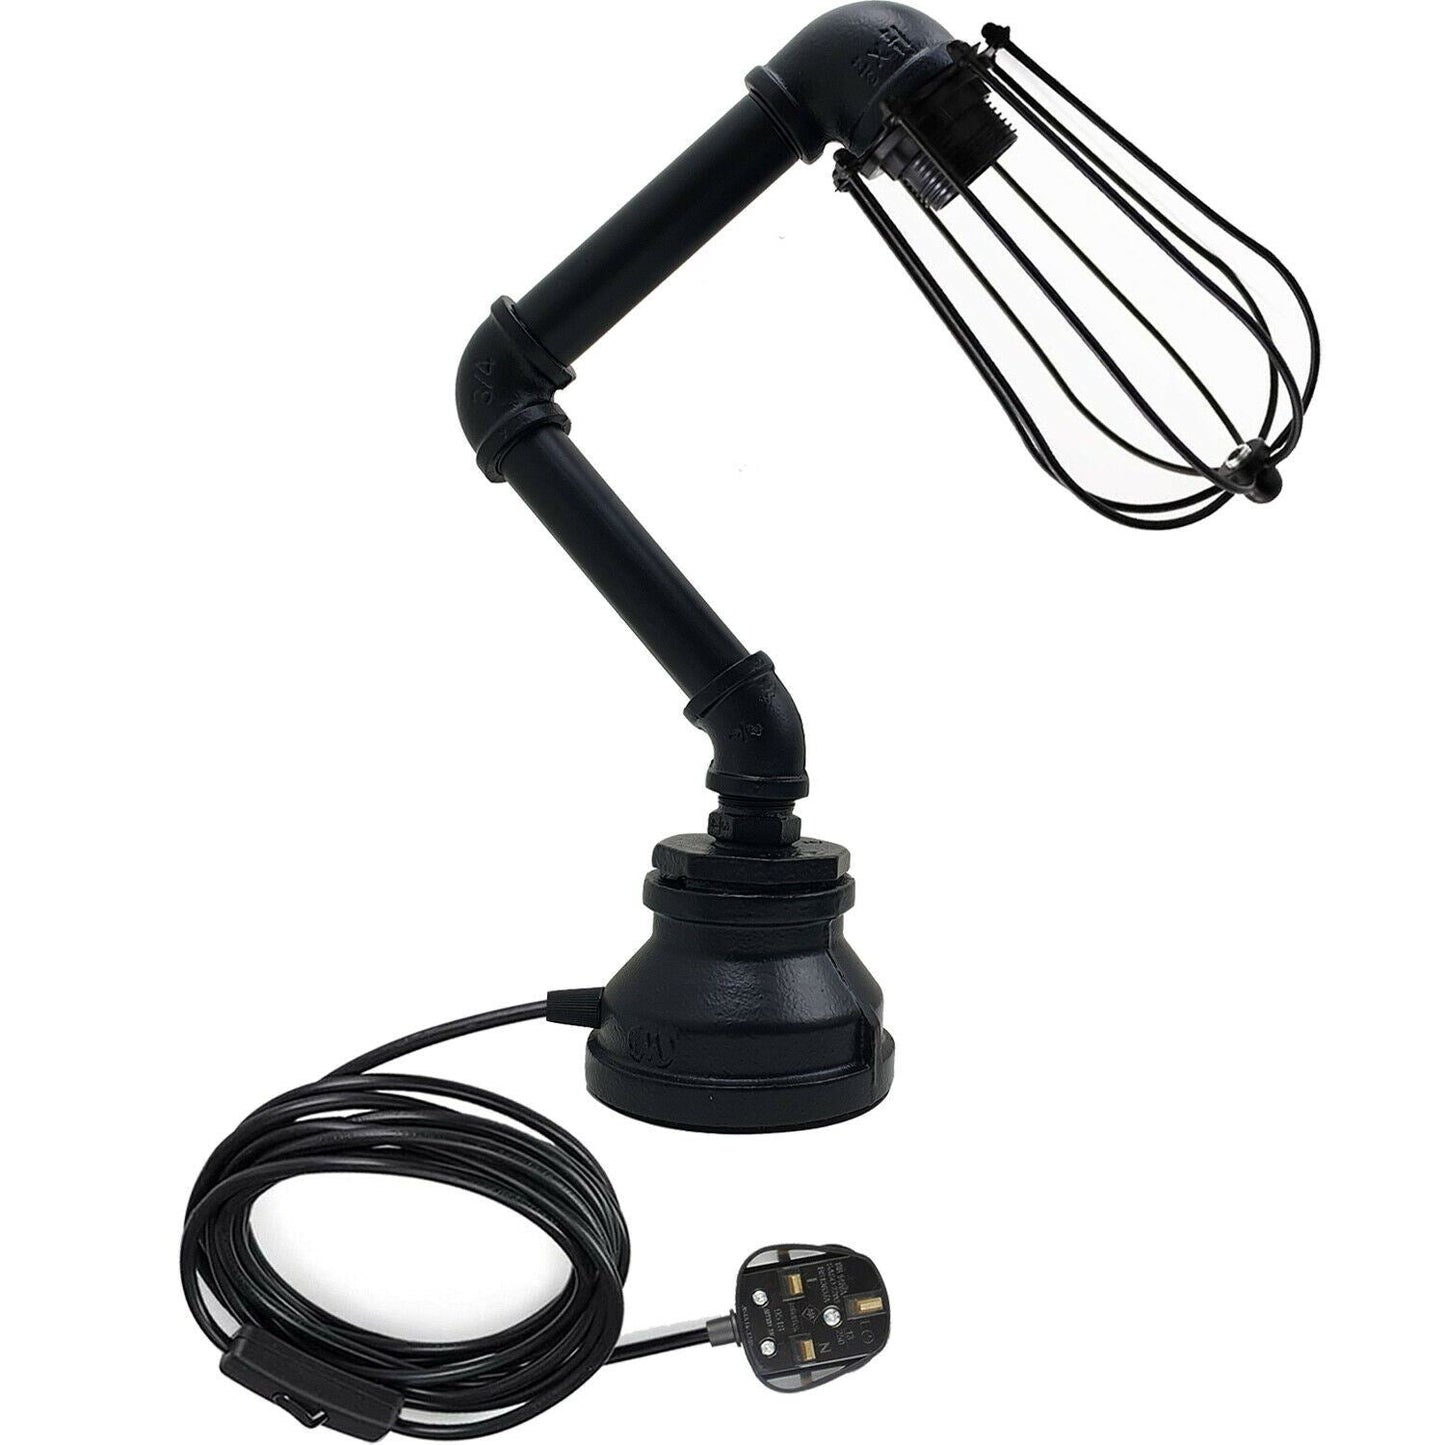 Retro Metal Water-Pipe Plug-In Table Lamp 